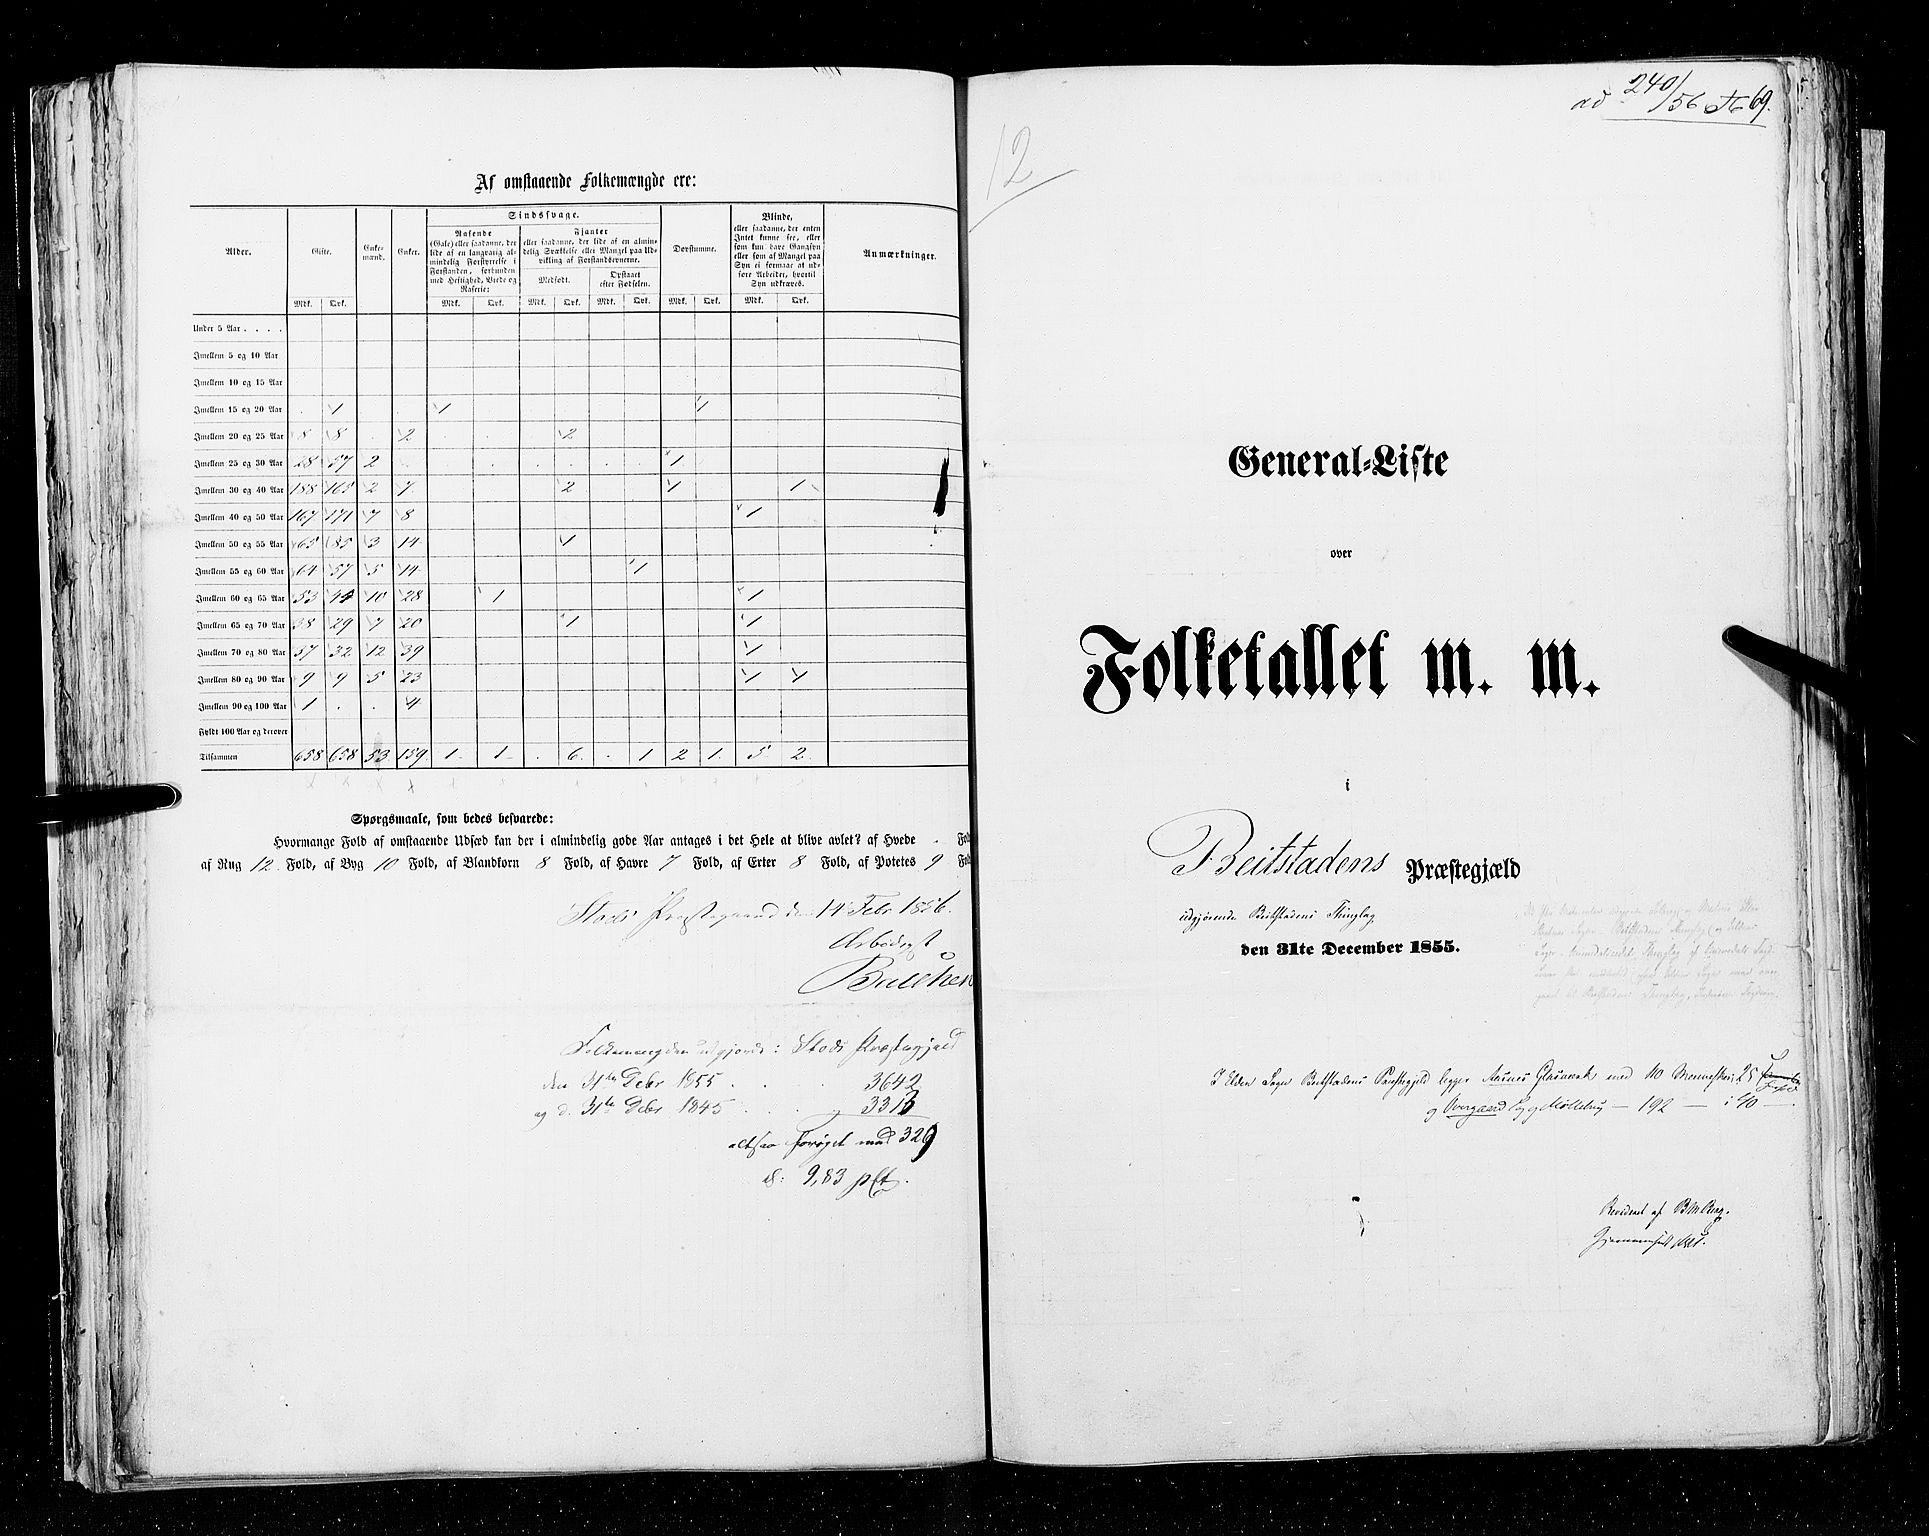 RA, Folketellingen 1855, bind 6A: Nordre Trondhjem amt og Nordland amt, 1855, s. 69